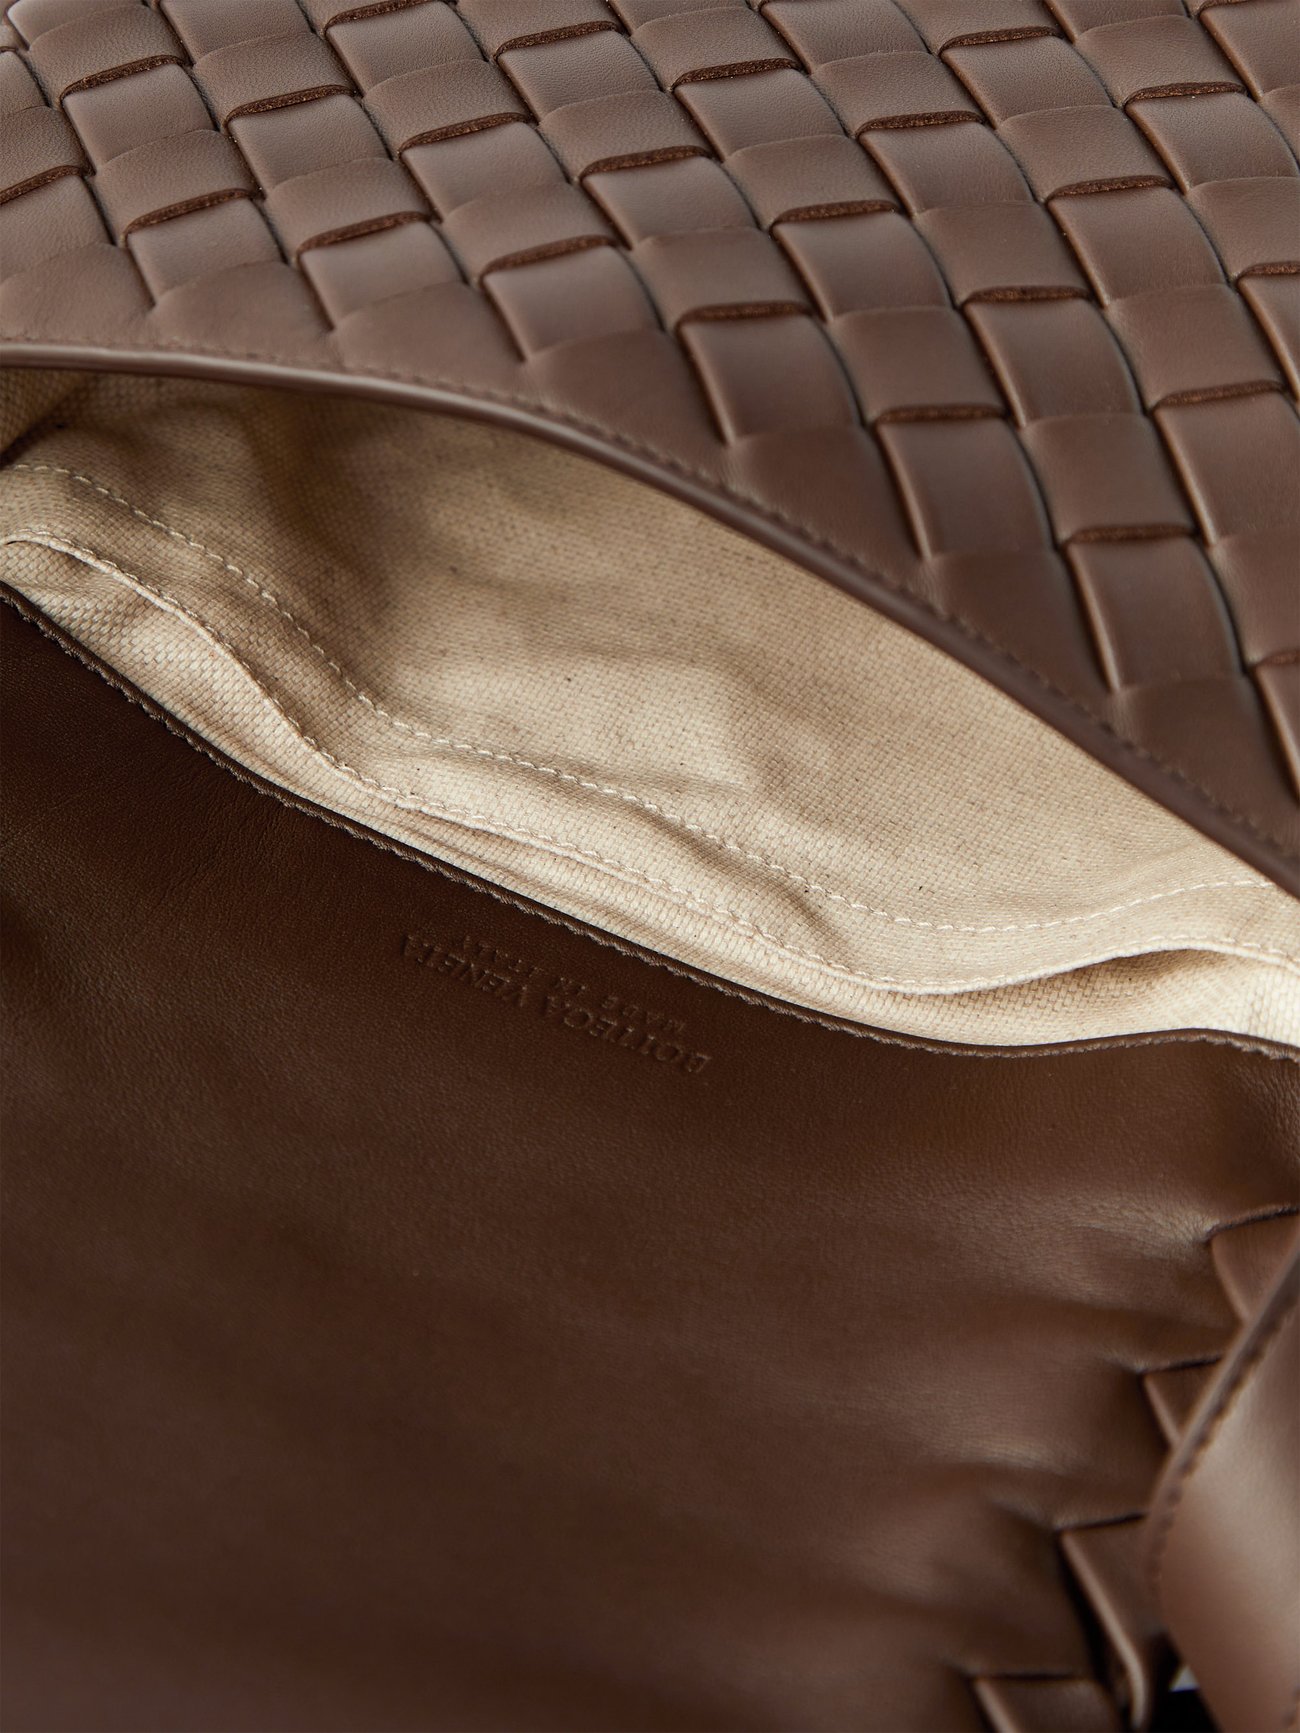 BOTTEGA VENETA INTRECCIATO Leather Chain Handbag Brown Interior Seal A -  Allu USA